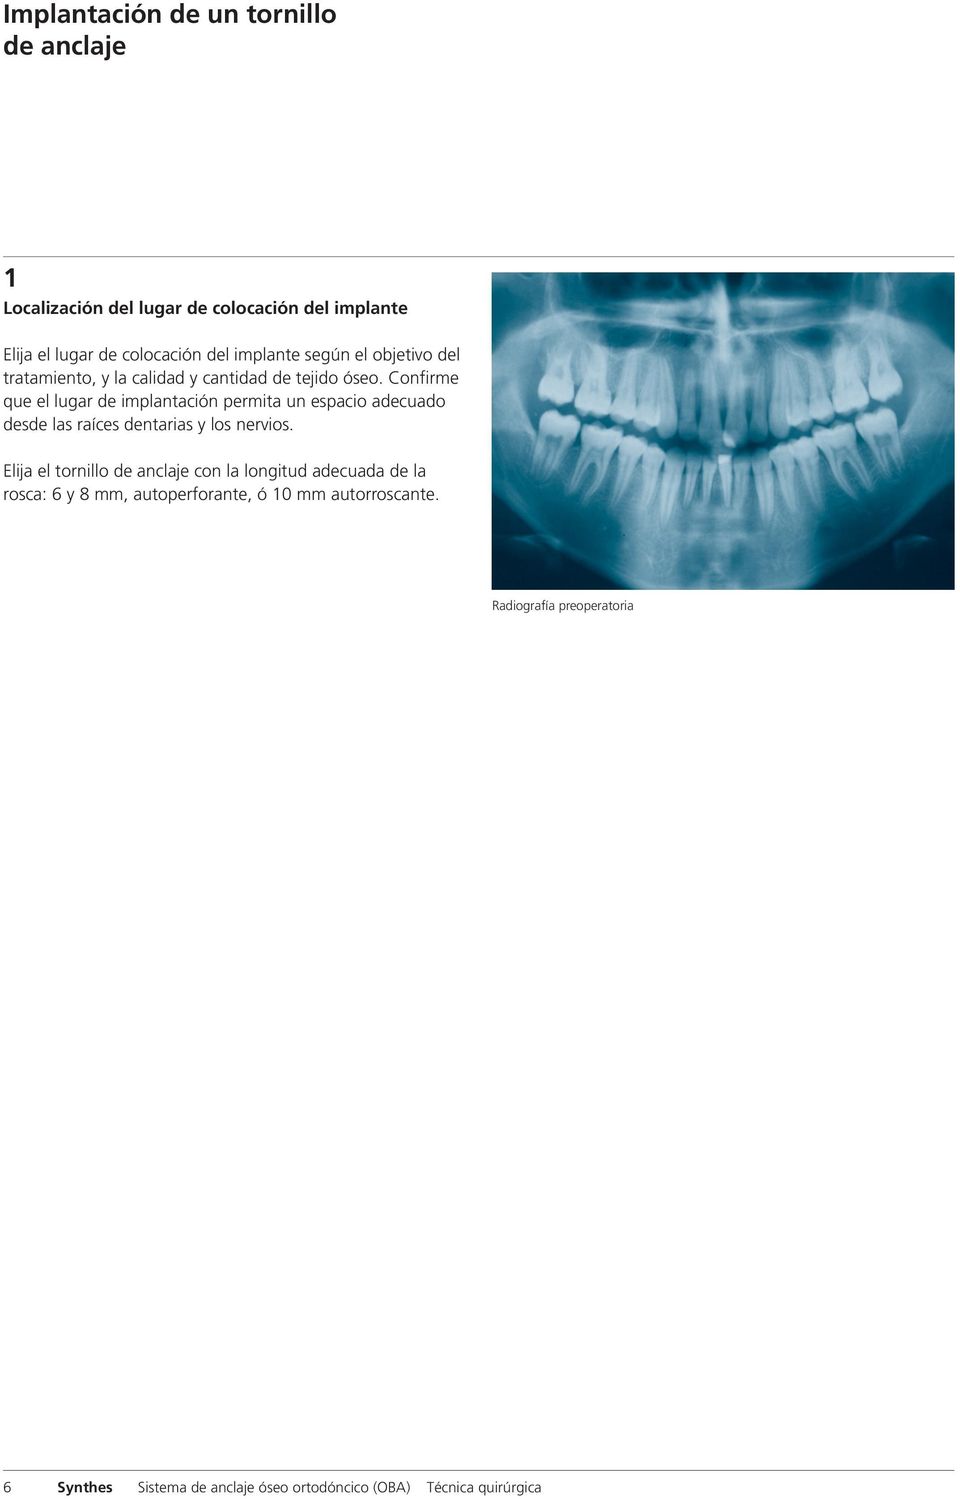 Confirme que el lugar de implantación permita un espacio adecuado desde las raíces dentarias y los nervios.